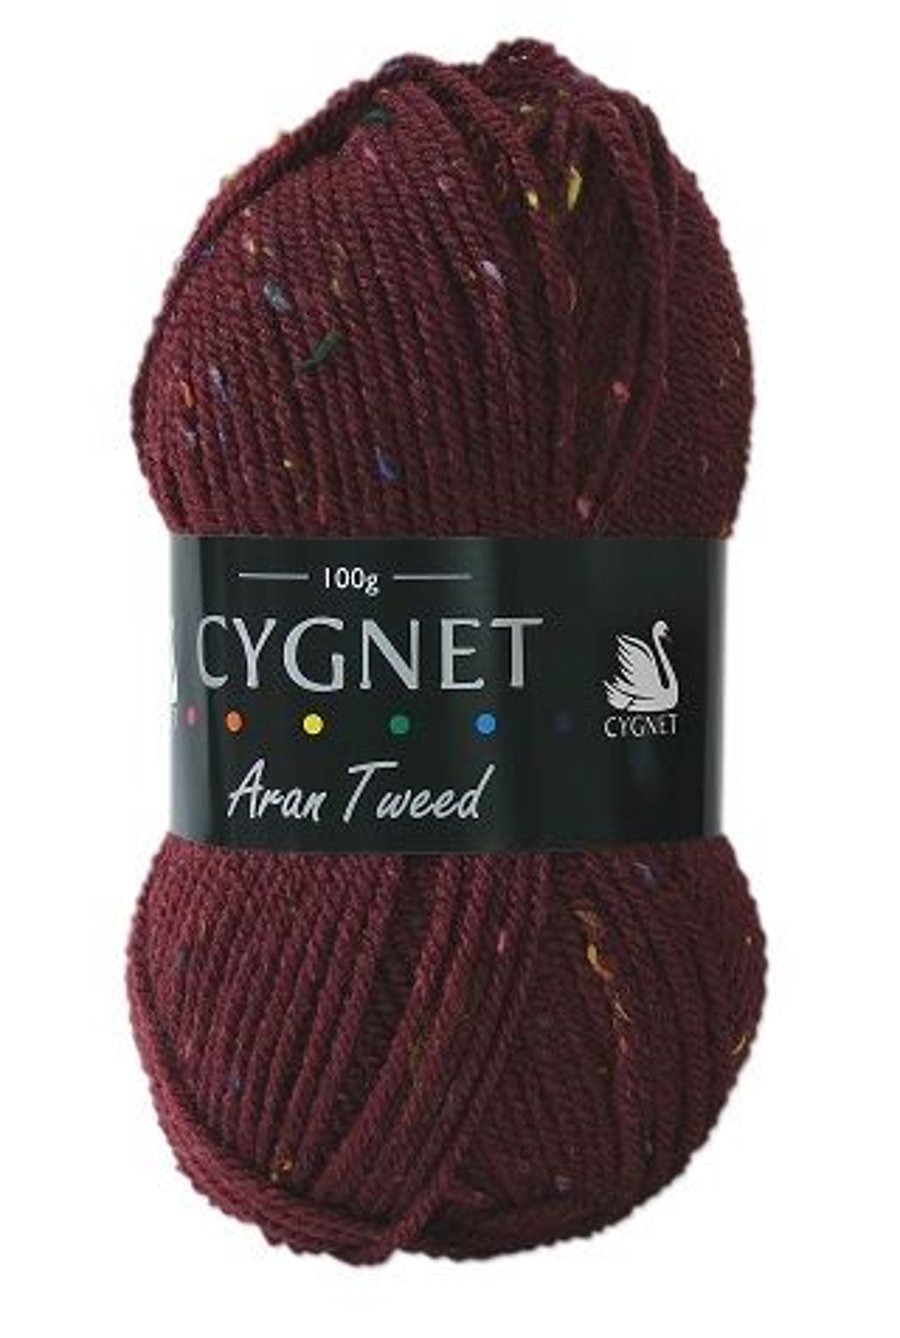 Cygnet Aran Tweed - Bramble